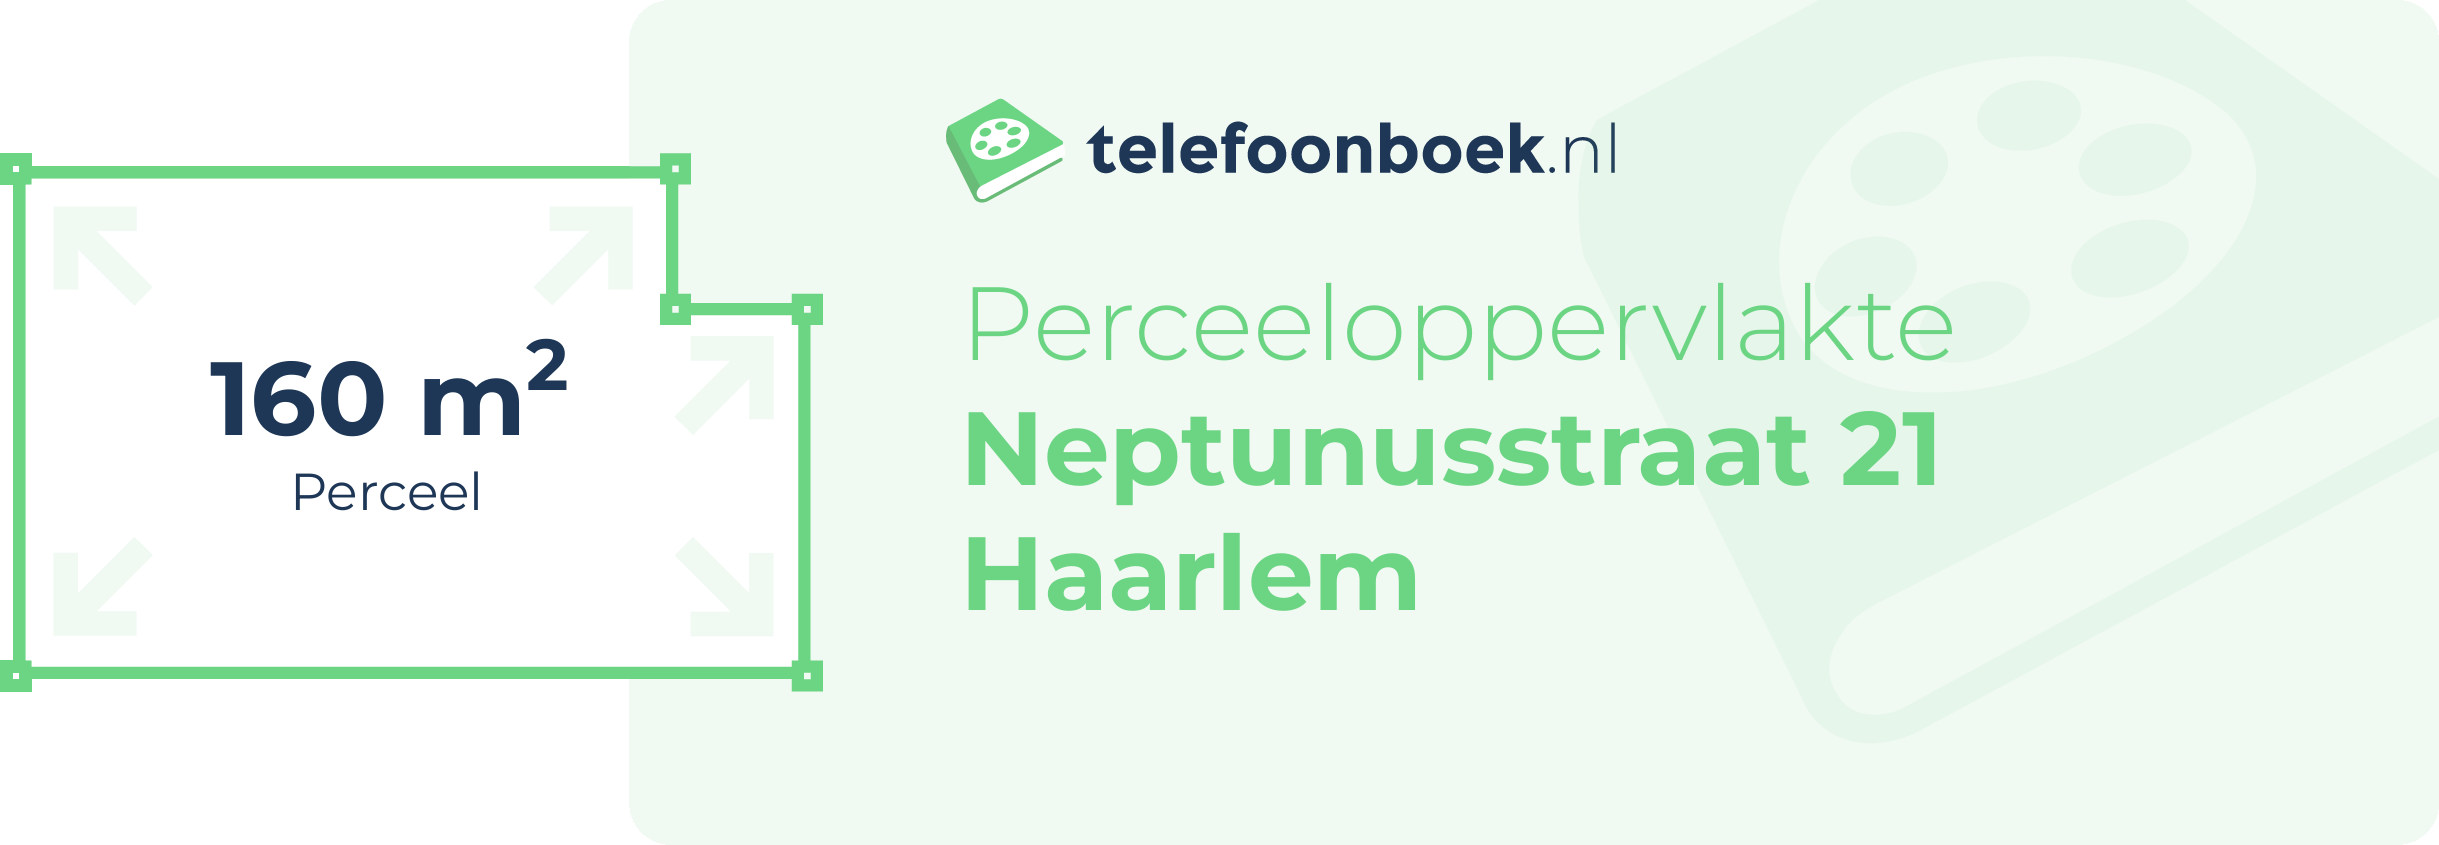 Perceeloppervlakte Neptunusstraat 21 Haarlem